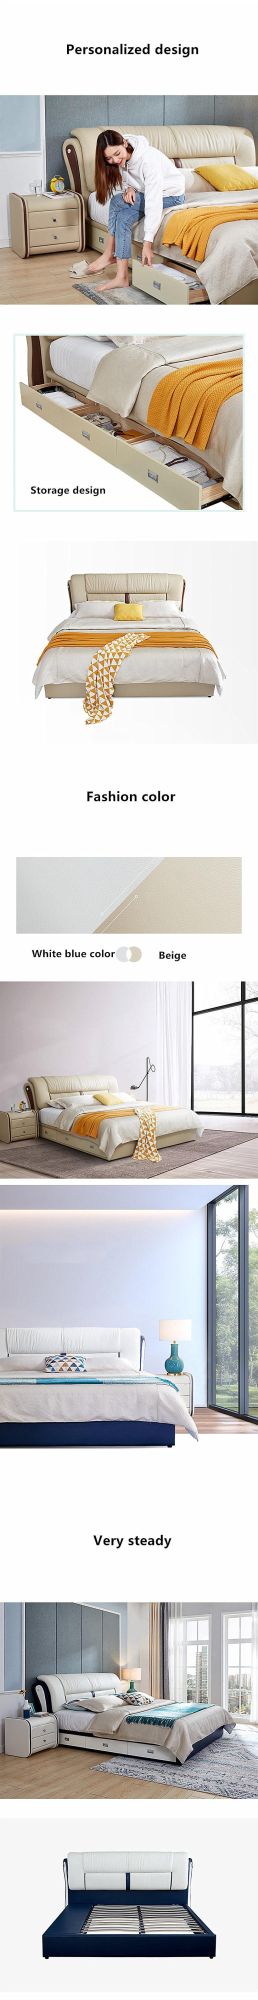 Modern Simple Modular Shelf Soft #Bed Bedroom Furniture 0180-5